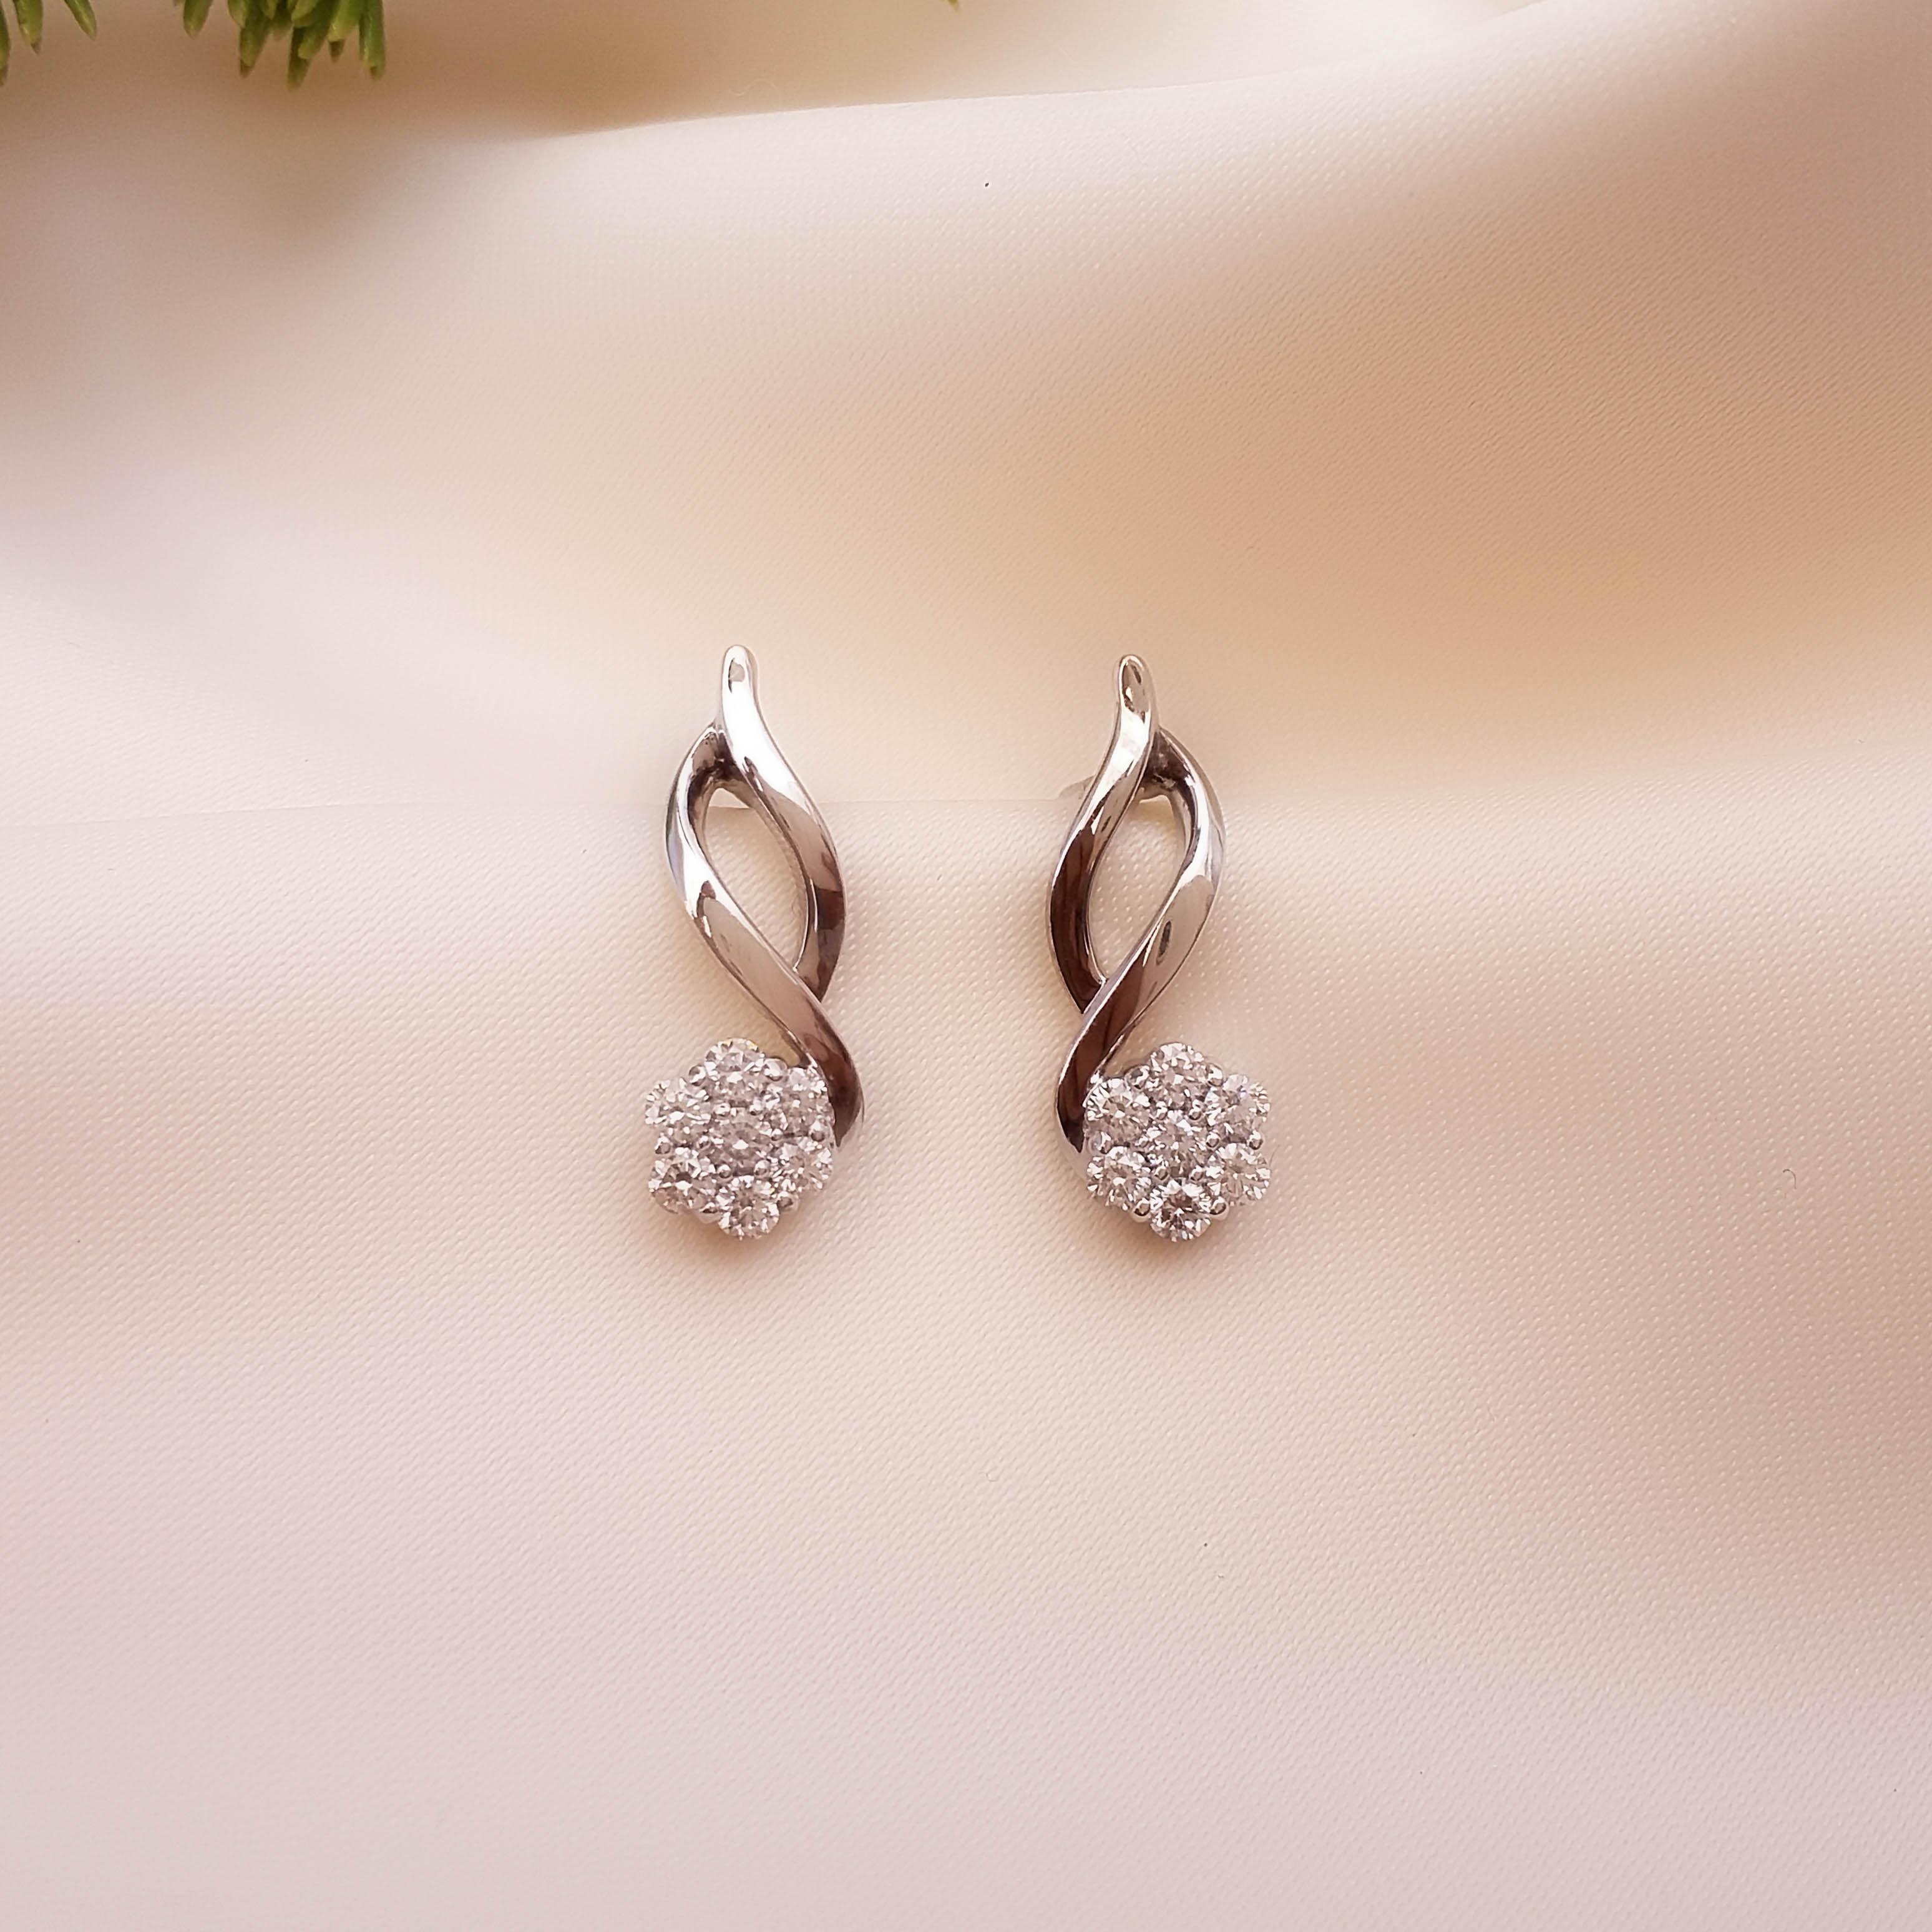 Update more than 84 cool earring designs super hot - 3tdesign.edu.vn